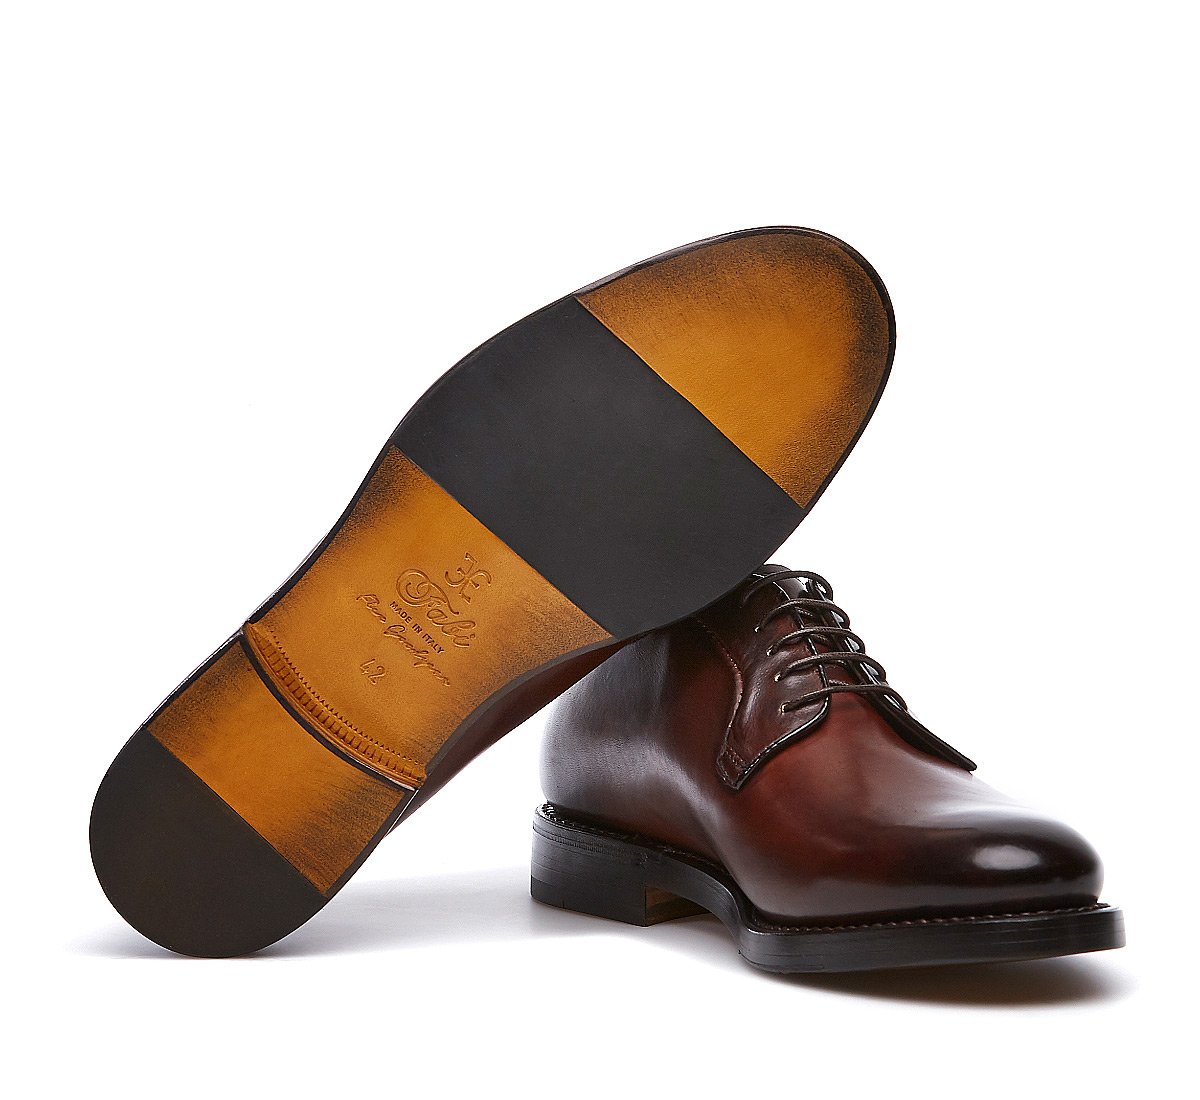 Ботинки на шнурках Flex Goodyear из телячьей кожи ручного дубления